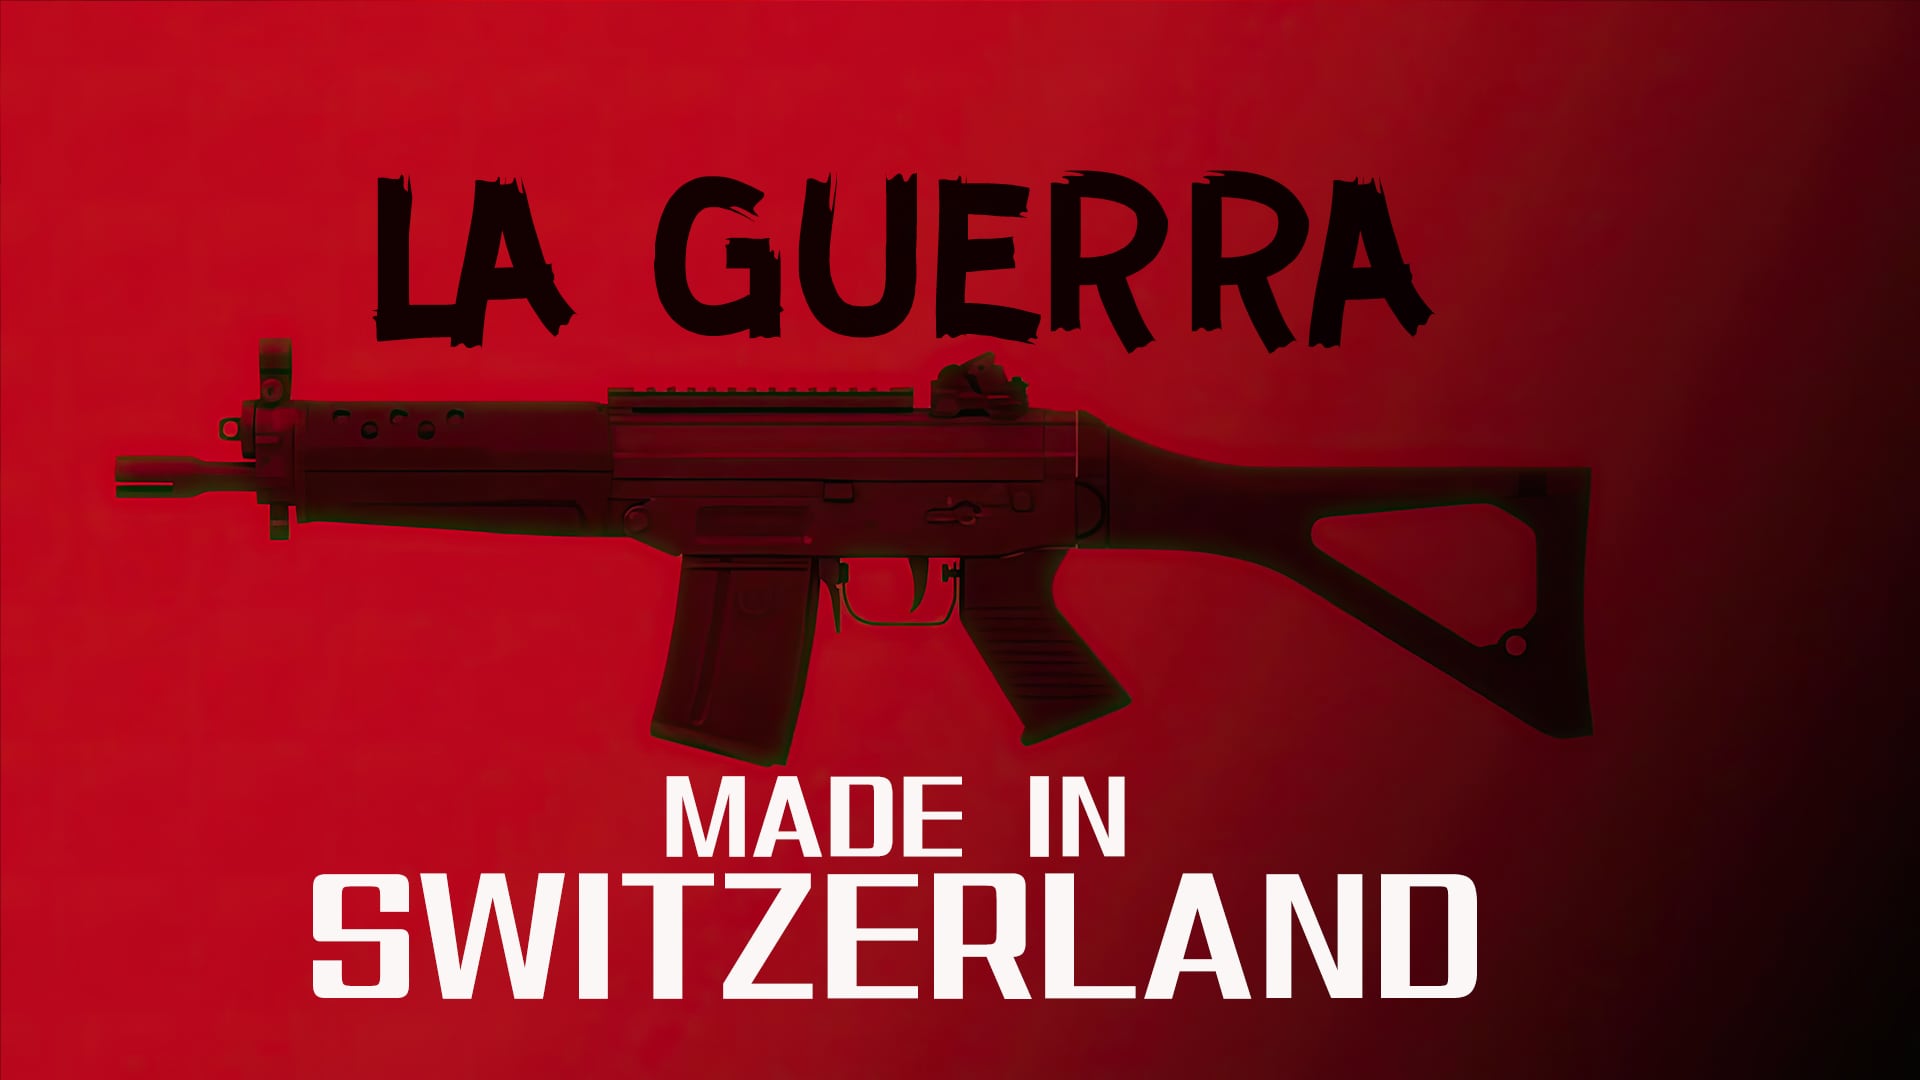 La guerra "made in Switzerland"